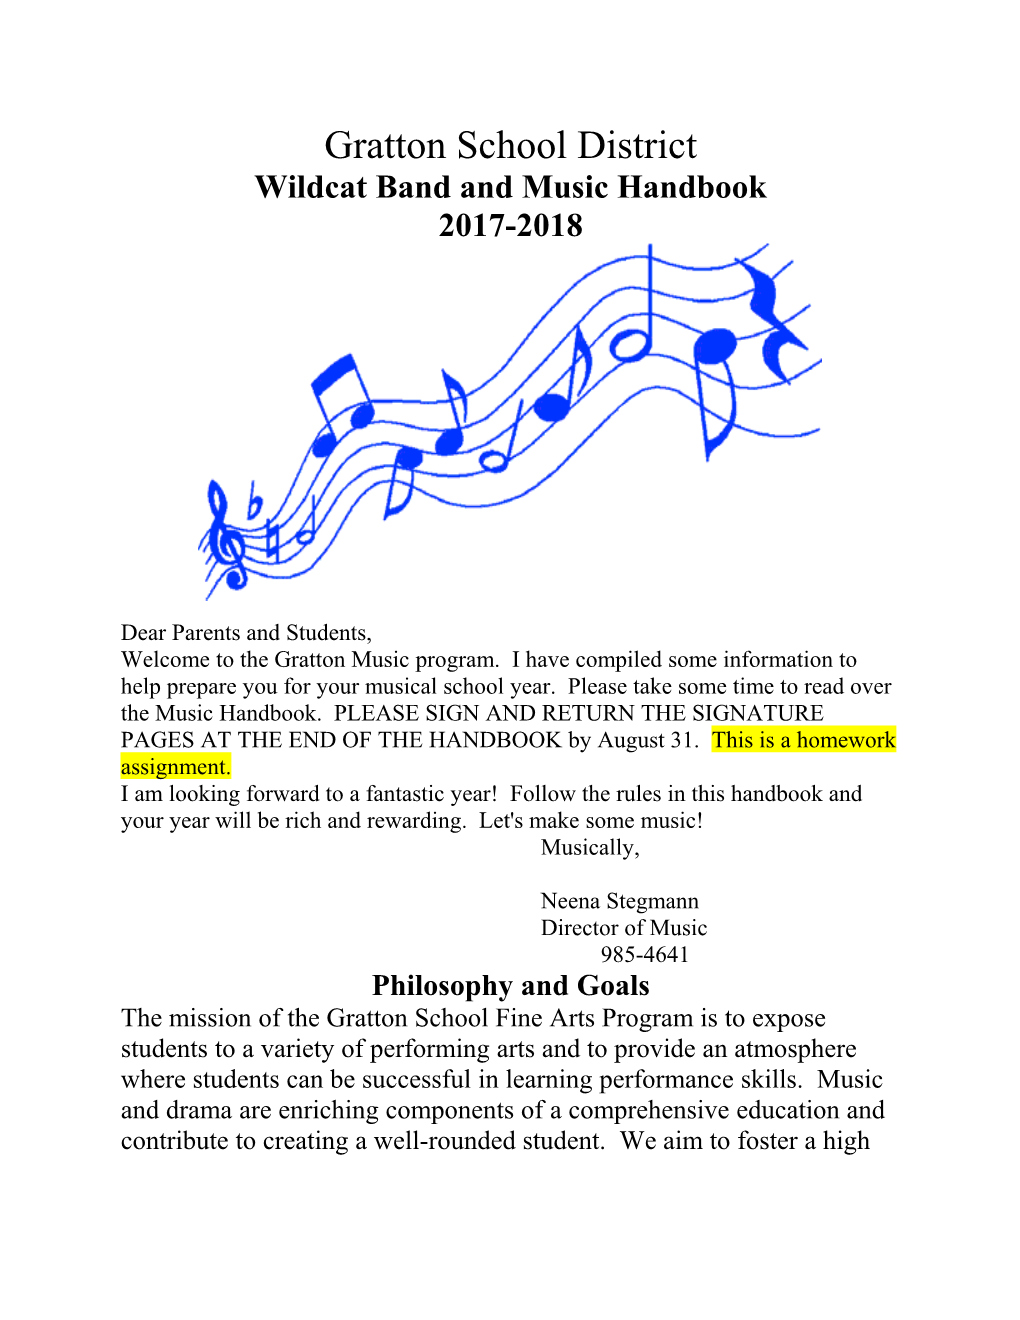 Wildcat Band and Music Handbook